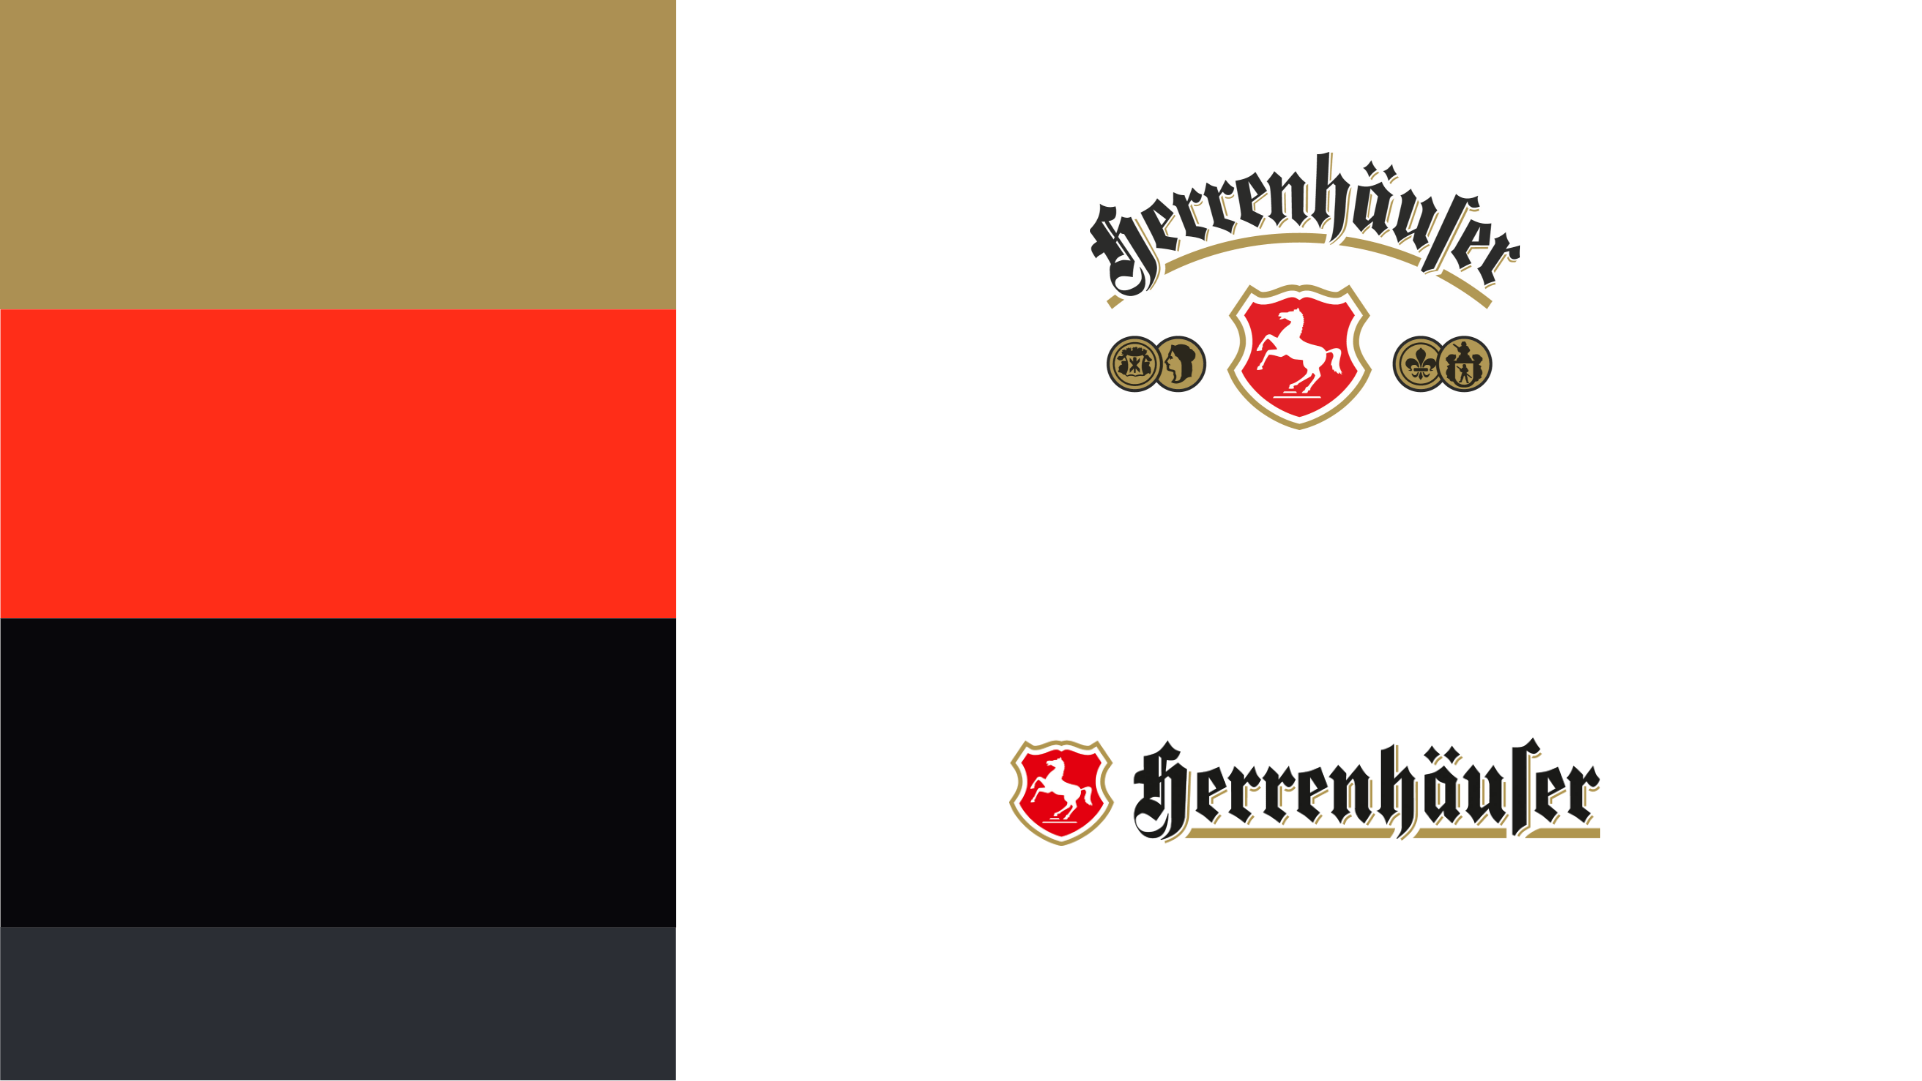 Herrenhäuser Brauerei Logos und Farben